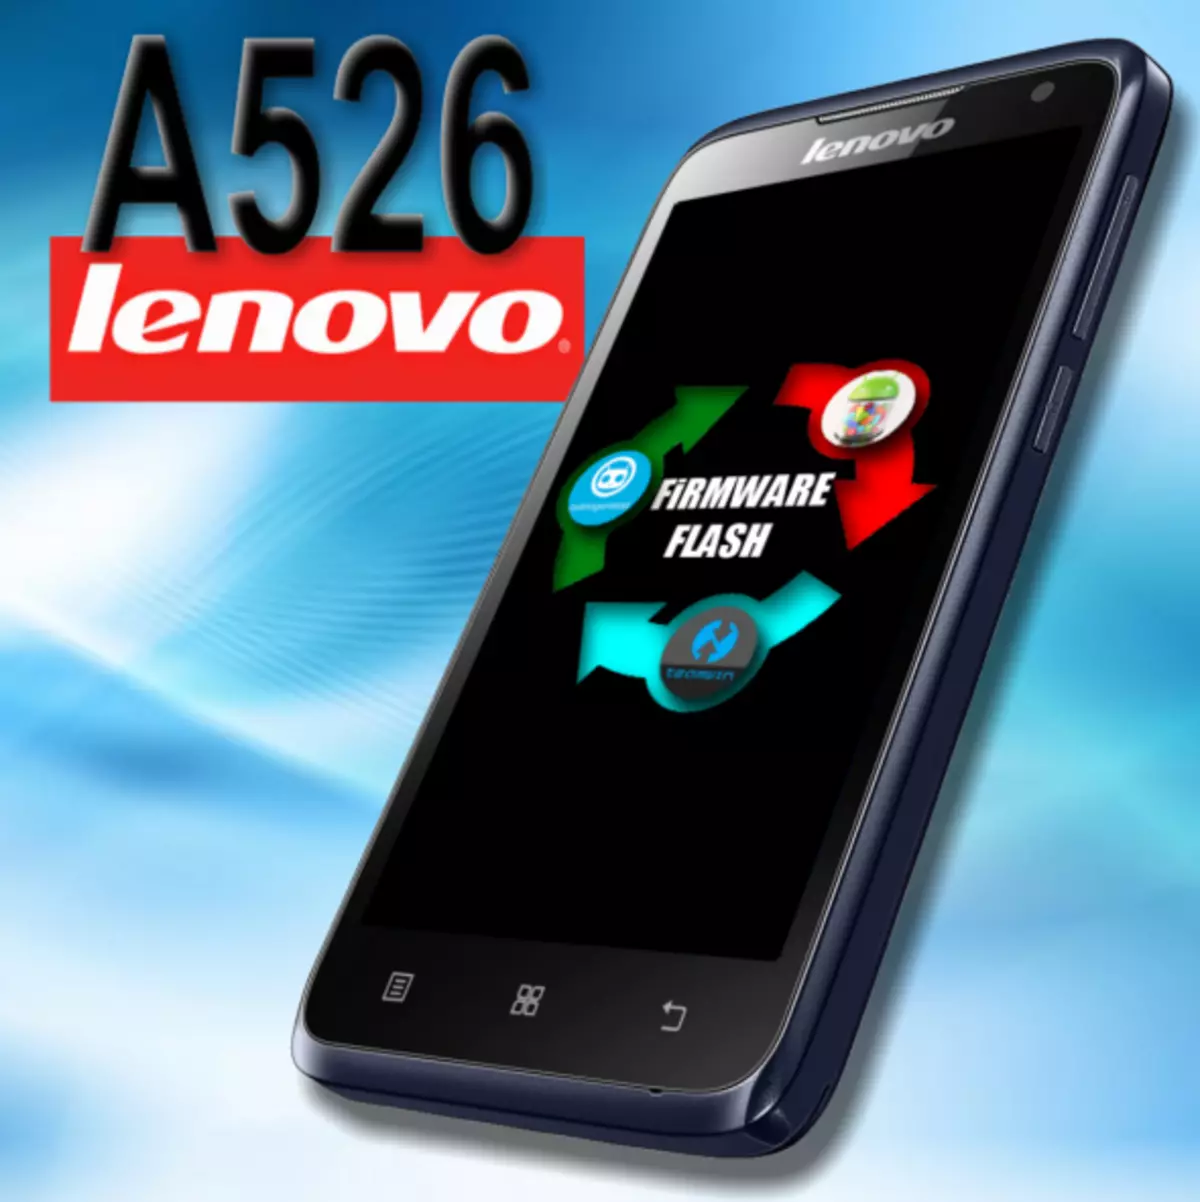 Phần sụn Lenovo A526.